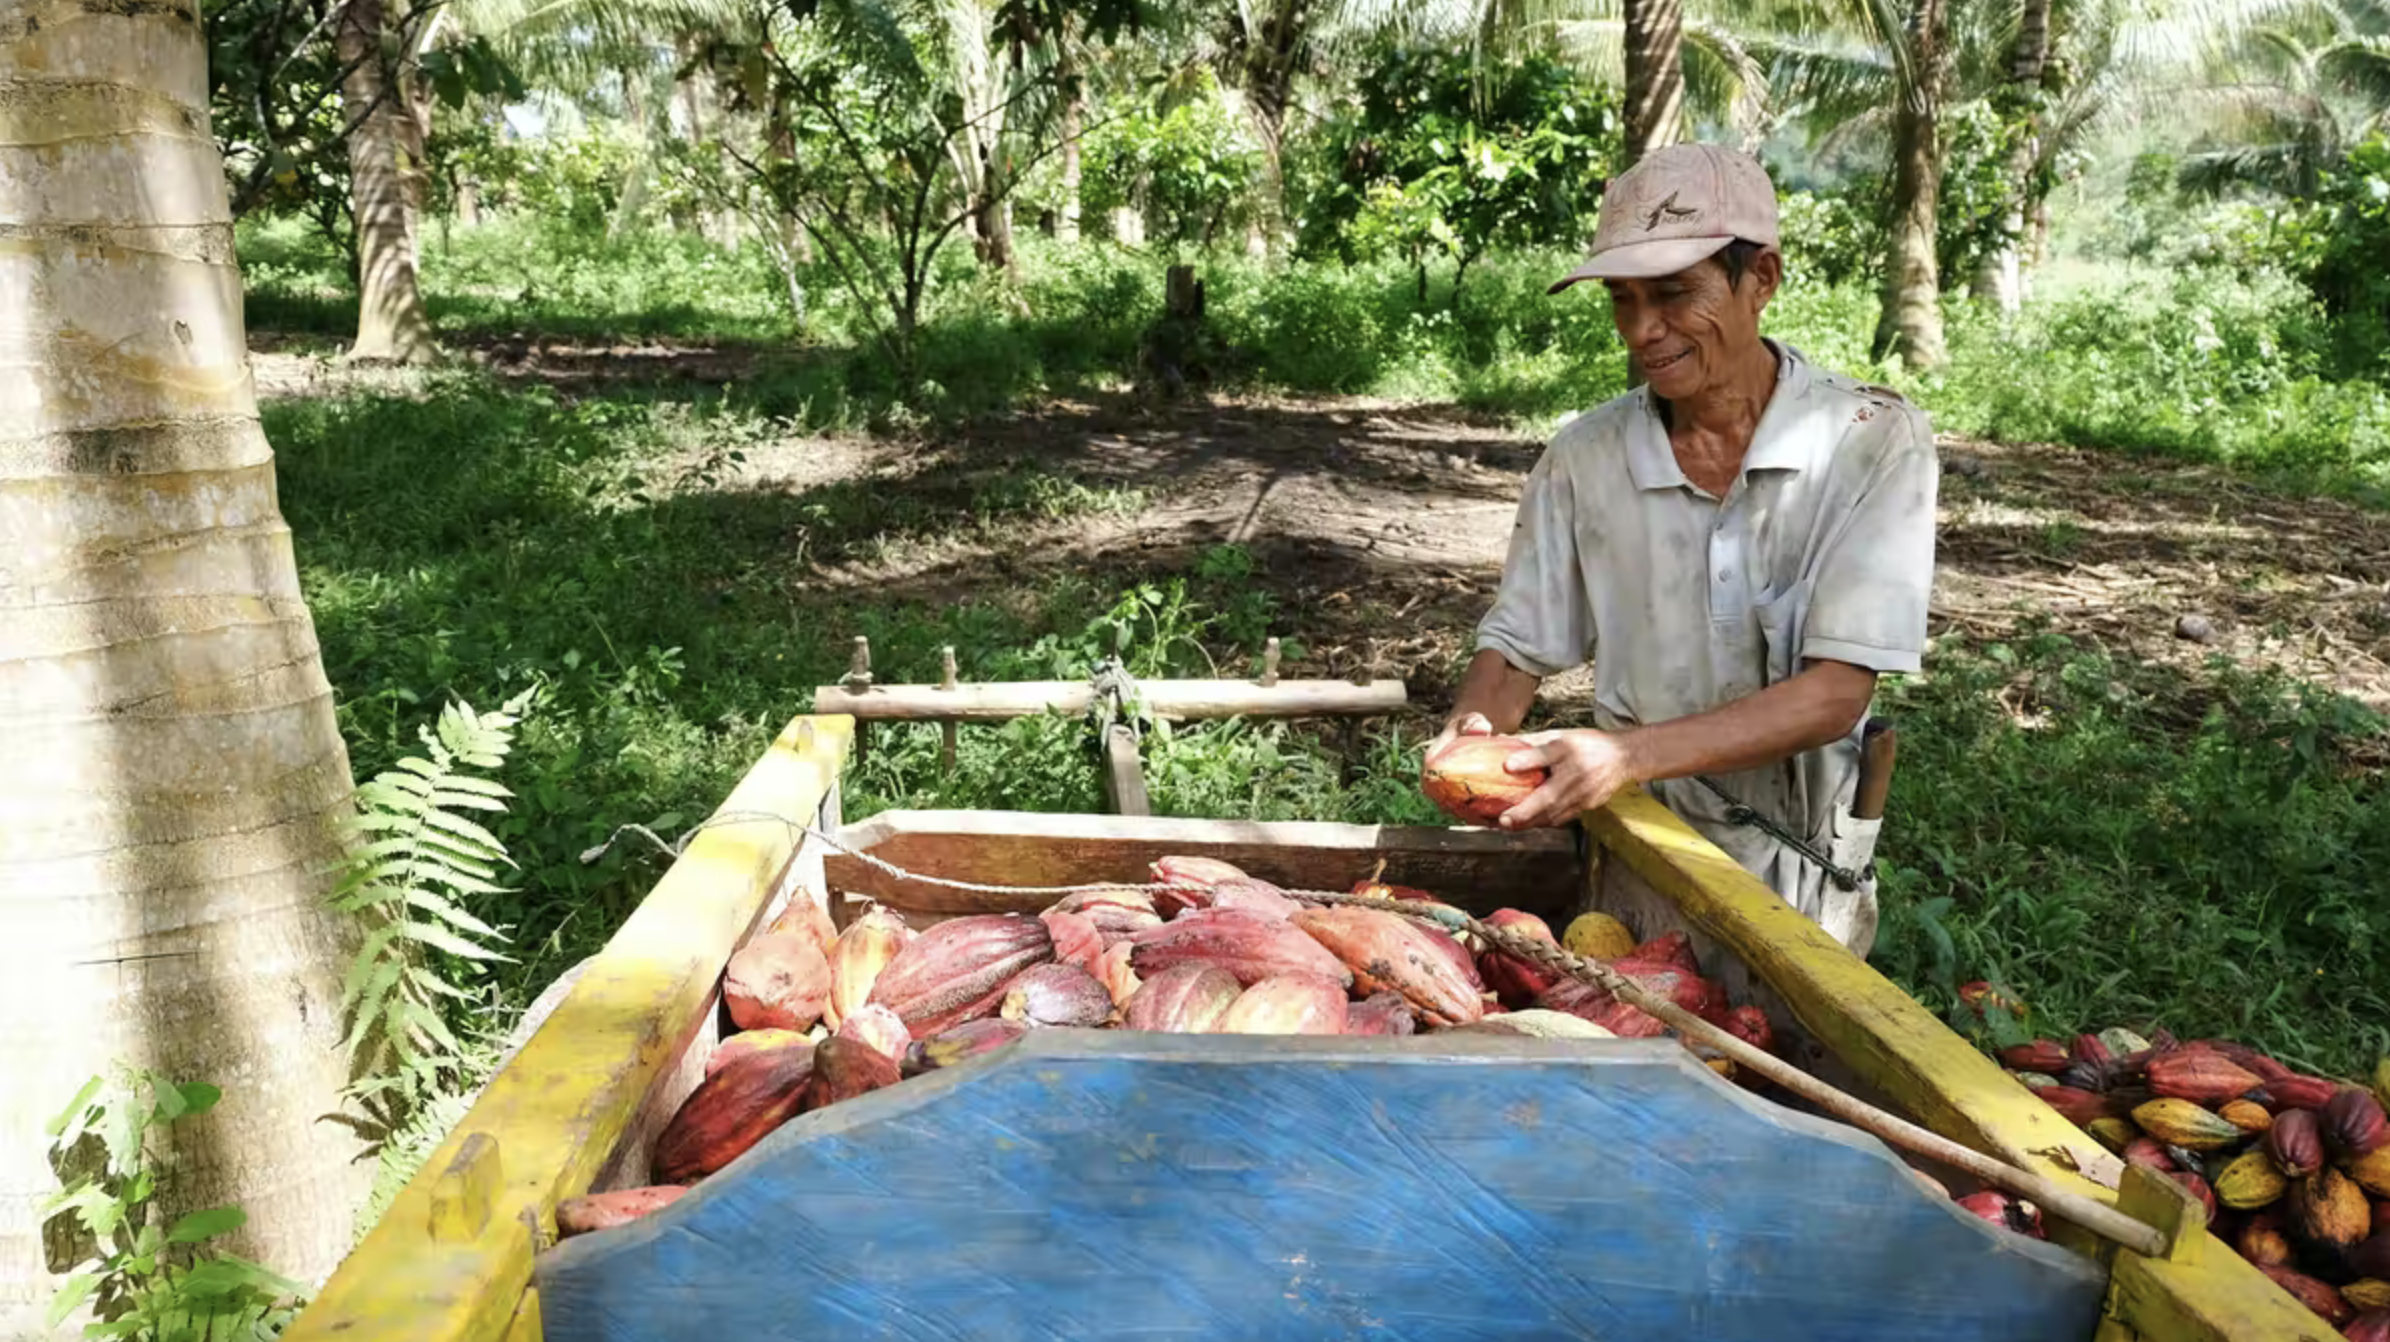 印度尼西亚的可可豆网(producción de cocoa)为pequeños农业提供了一个货源，而昆虫网(disminución de insect)为可可豆网提供了一个货源。